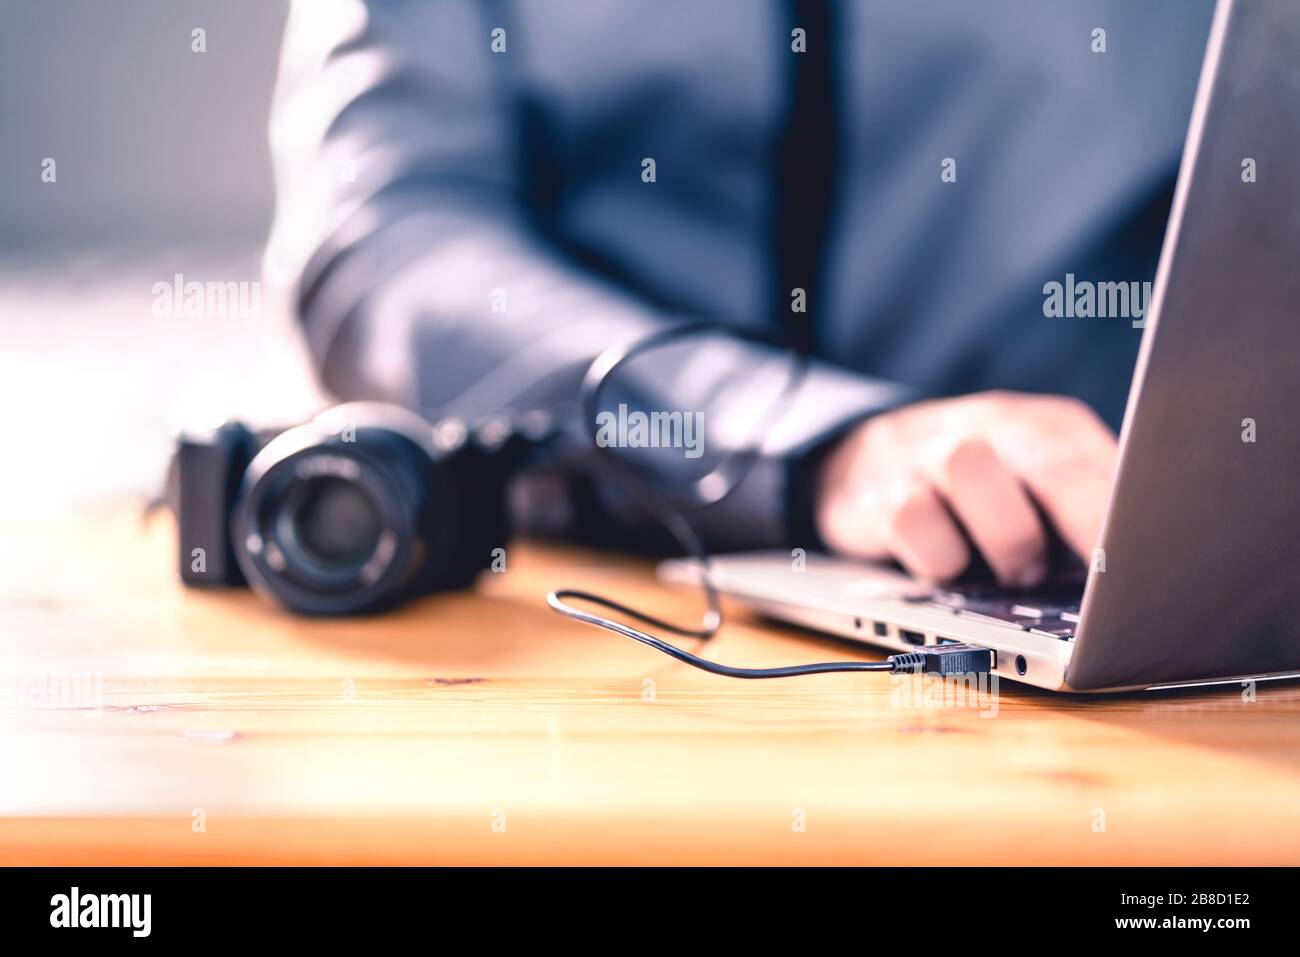 Cámara conectada al portátil con cable usb. Hombre editando fotos con software informático. El fotógrafo transfiere archivos al ordenador desde una cámara réflex digital. Foto de stock